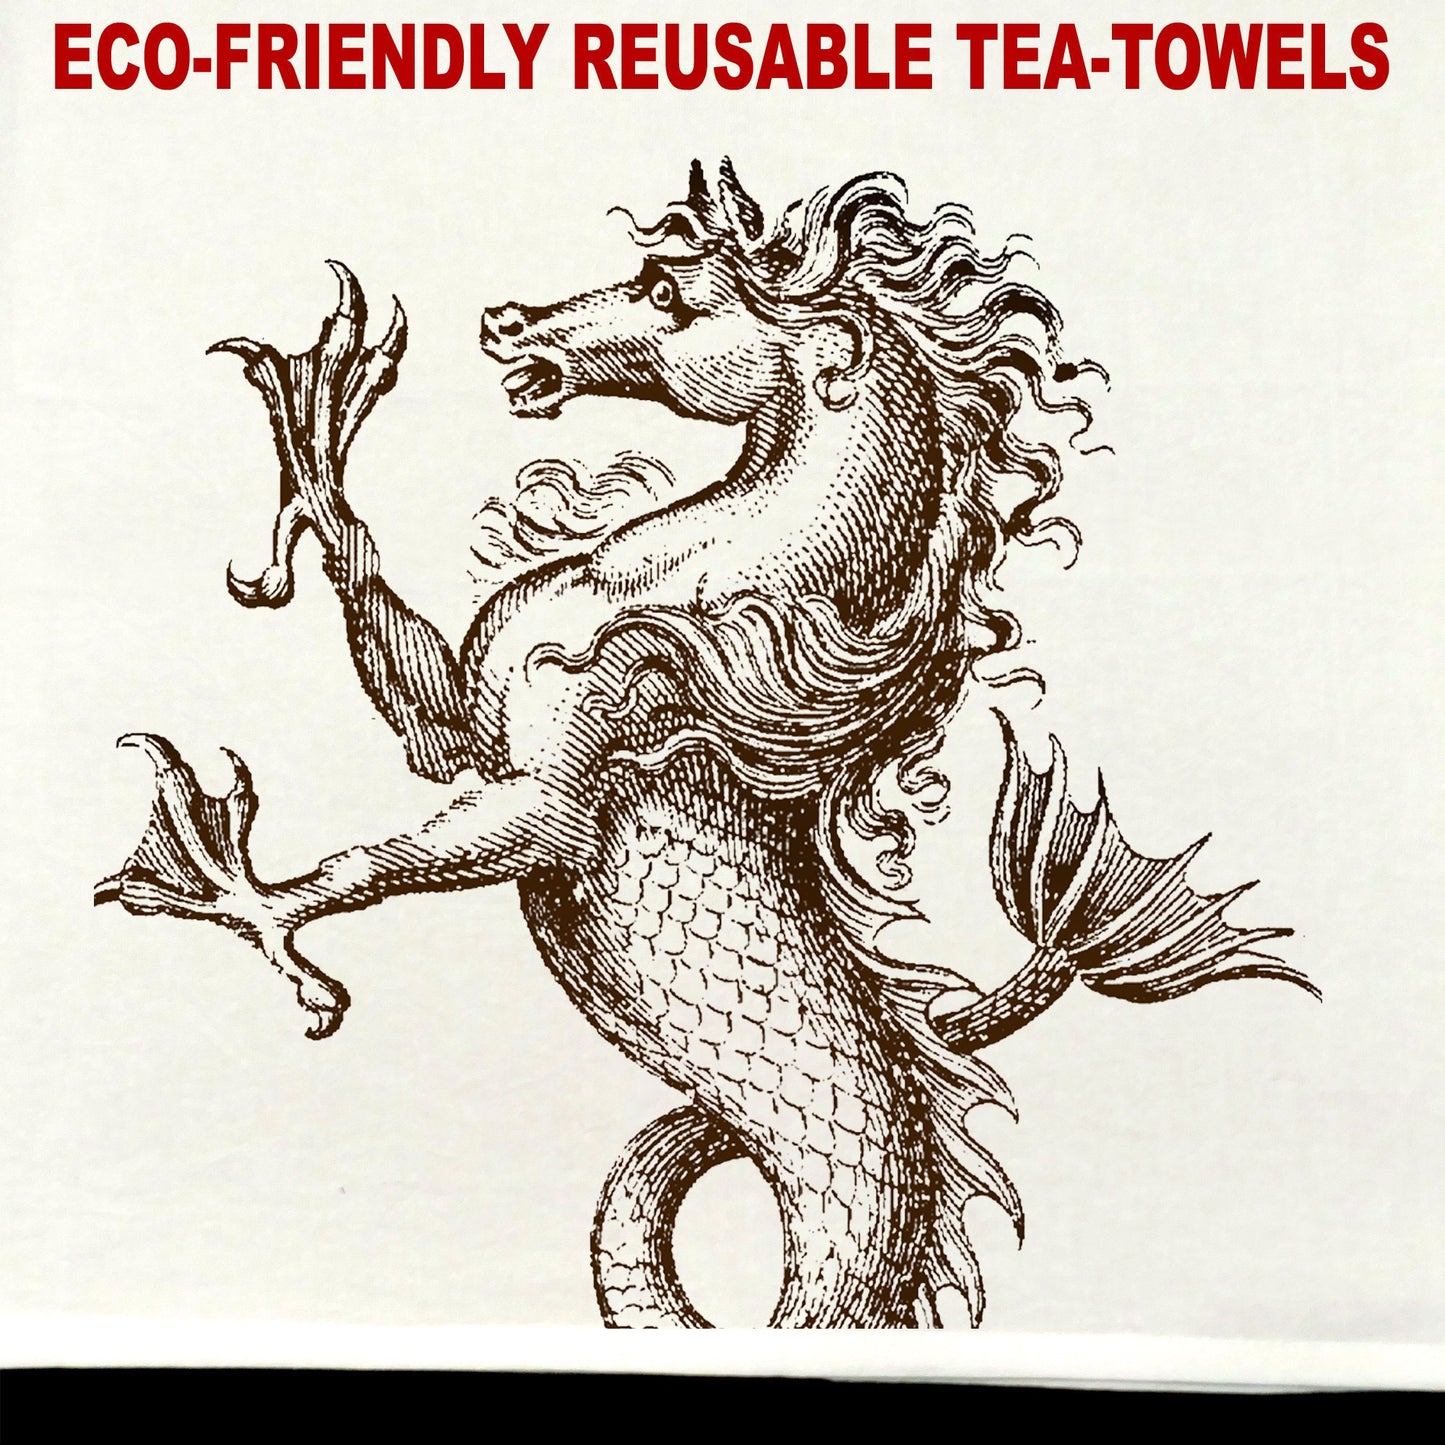 Hippocampus Tea Towel / tea towel / dish towel / hand towel / reusable wipe / kitchen gift / kitchen deco